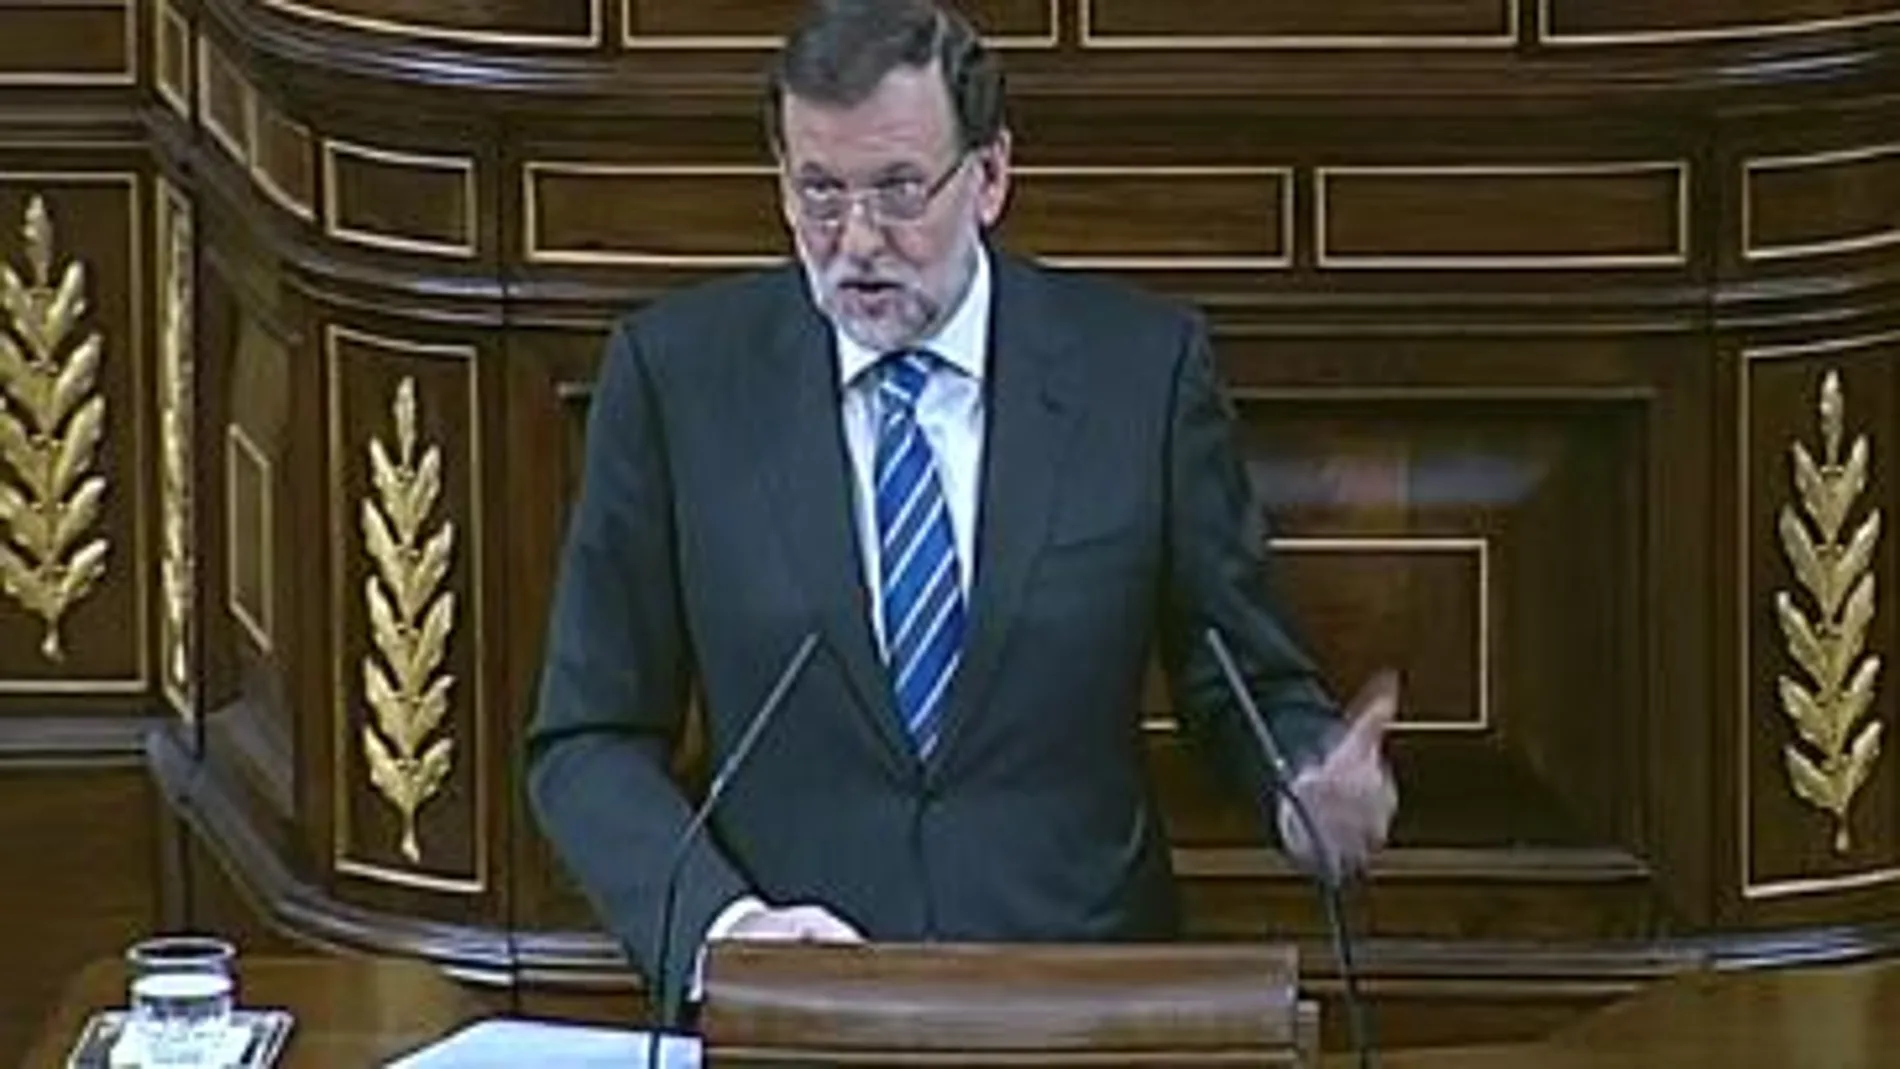 Rajoy comienza su réplica